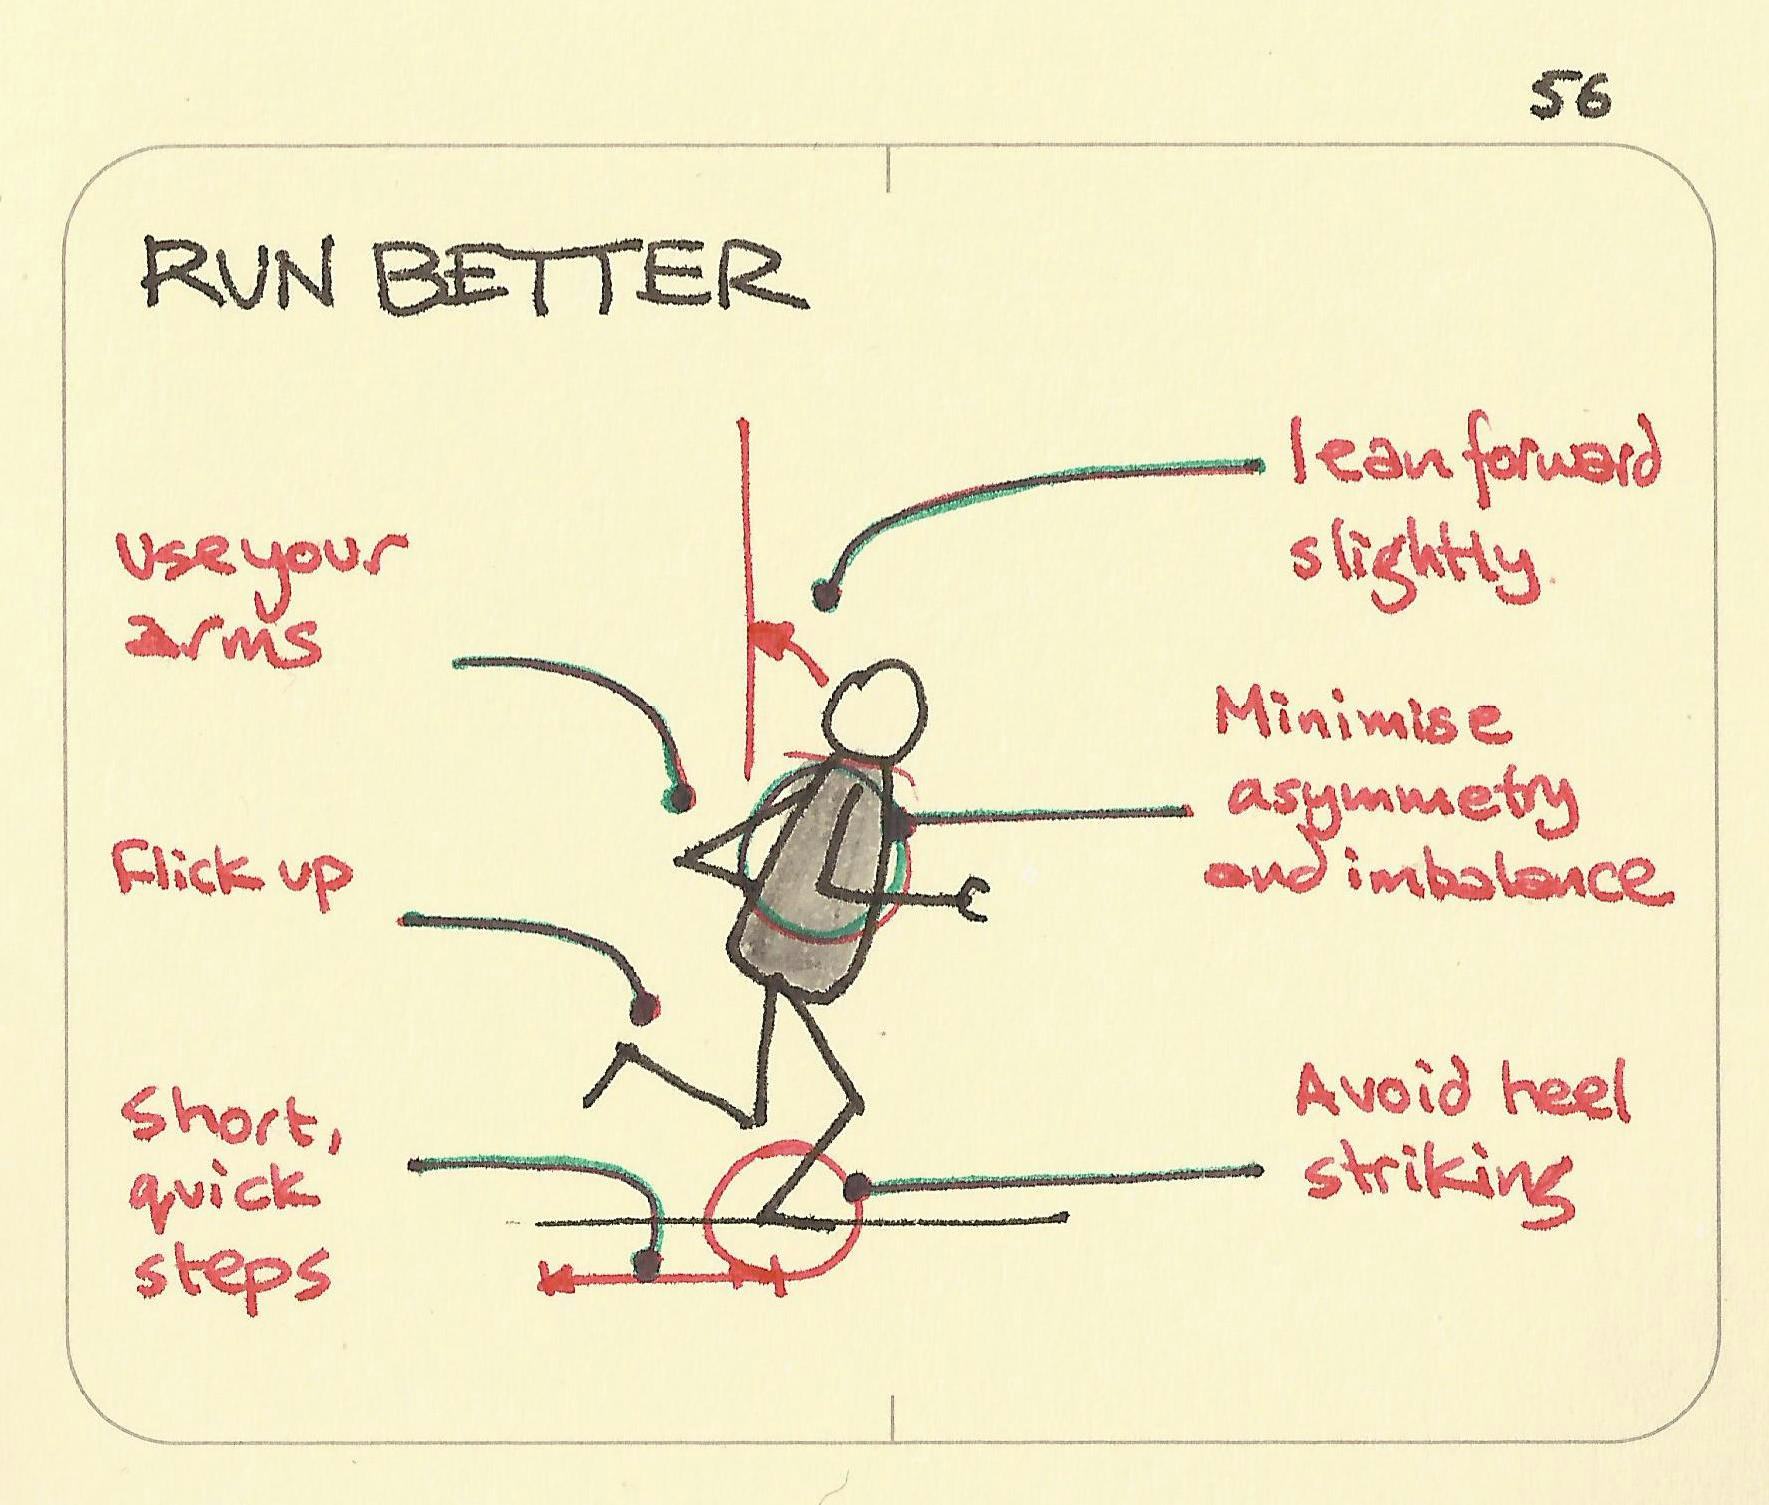 Run better - Sketchplanations